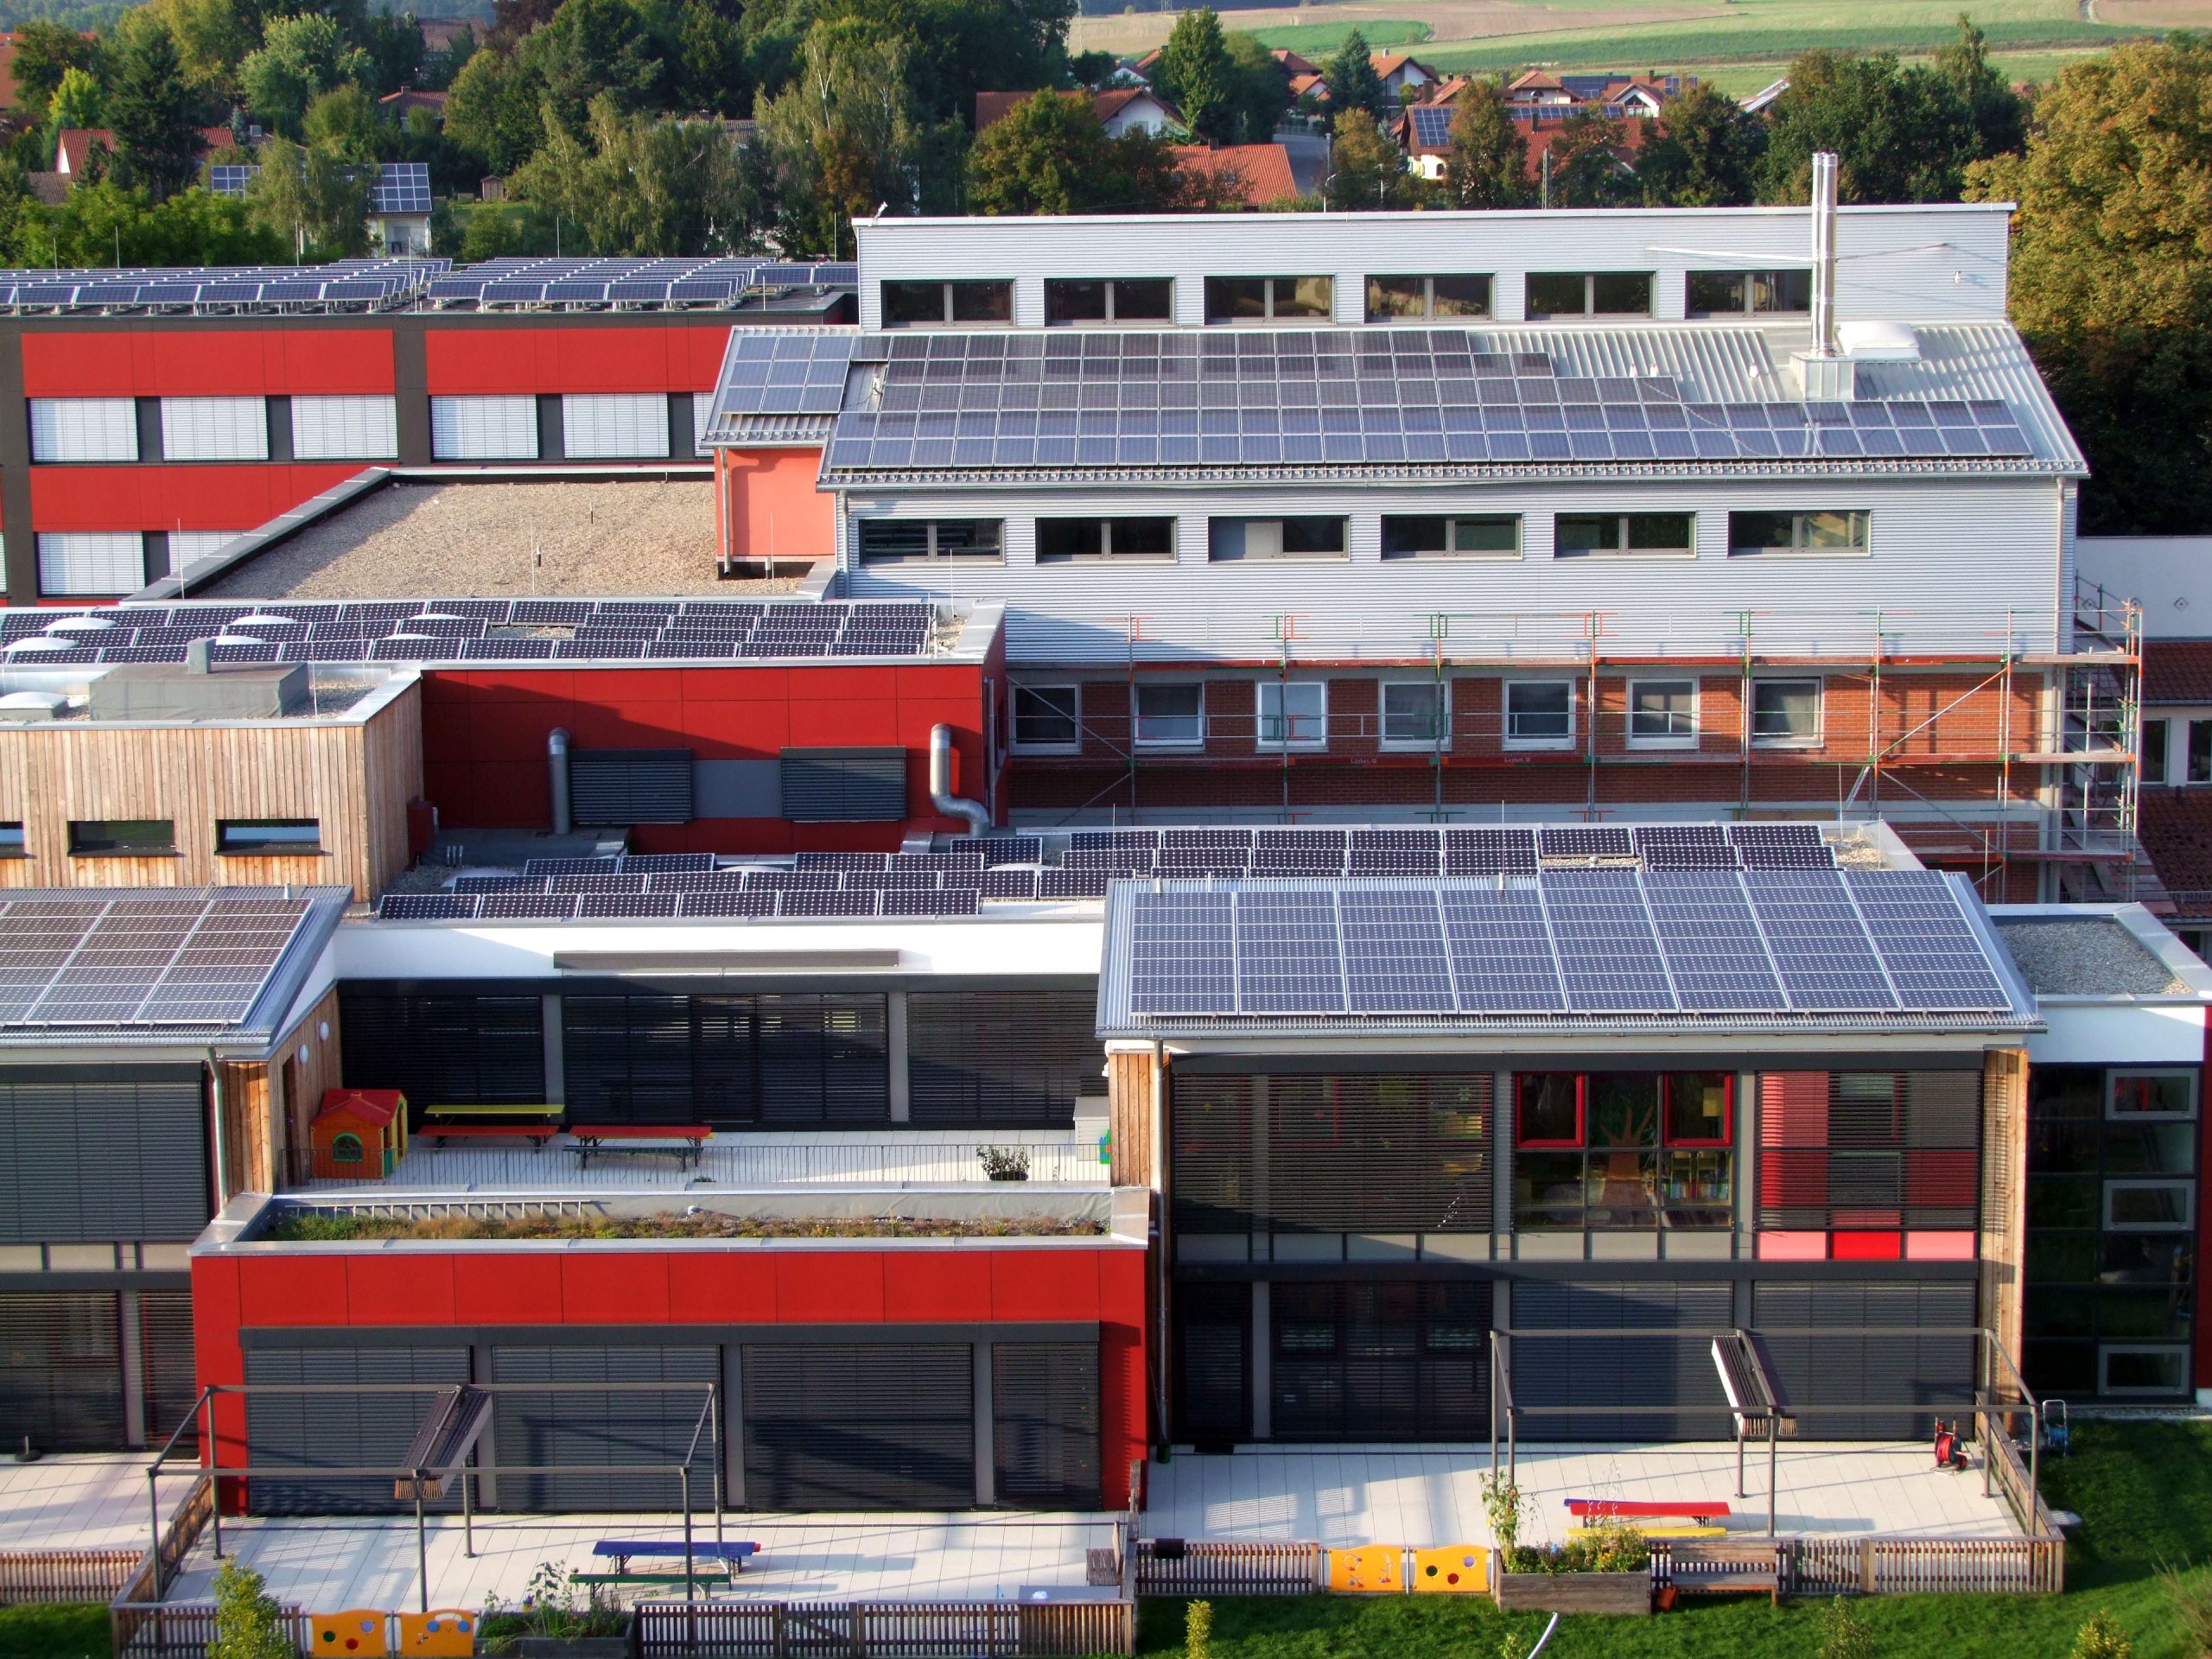 C.A.R.M.E.N.-Fortbildung für Lehrkräfte “Energie aus Umwelt und Sonne – Solarthermie, Wärmepumpe, Photovoltaik”